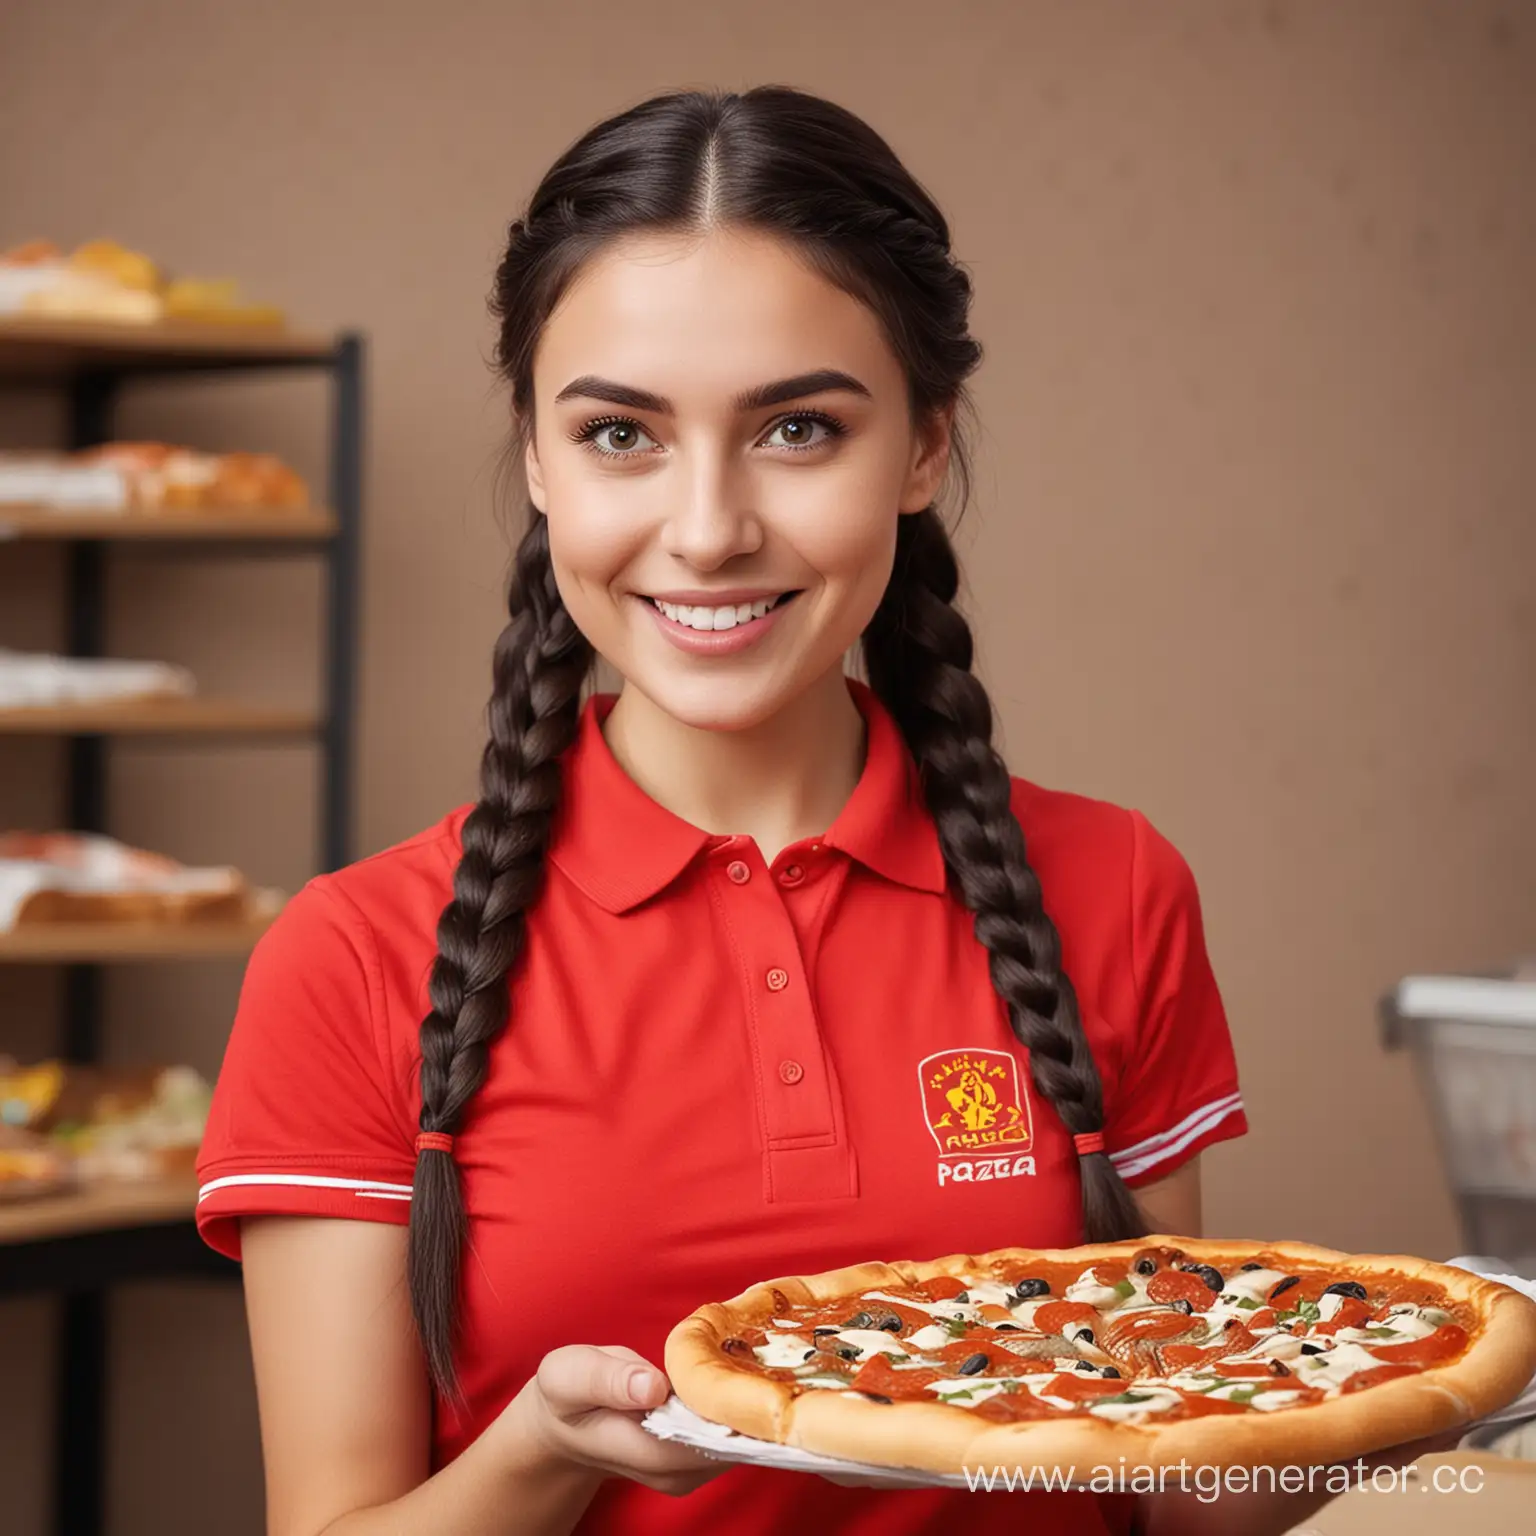 кассир девушка с темными волосами с косичкой русская стоит в красной футболке поло улыбается отдает пиццу покупателю